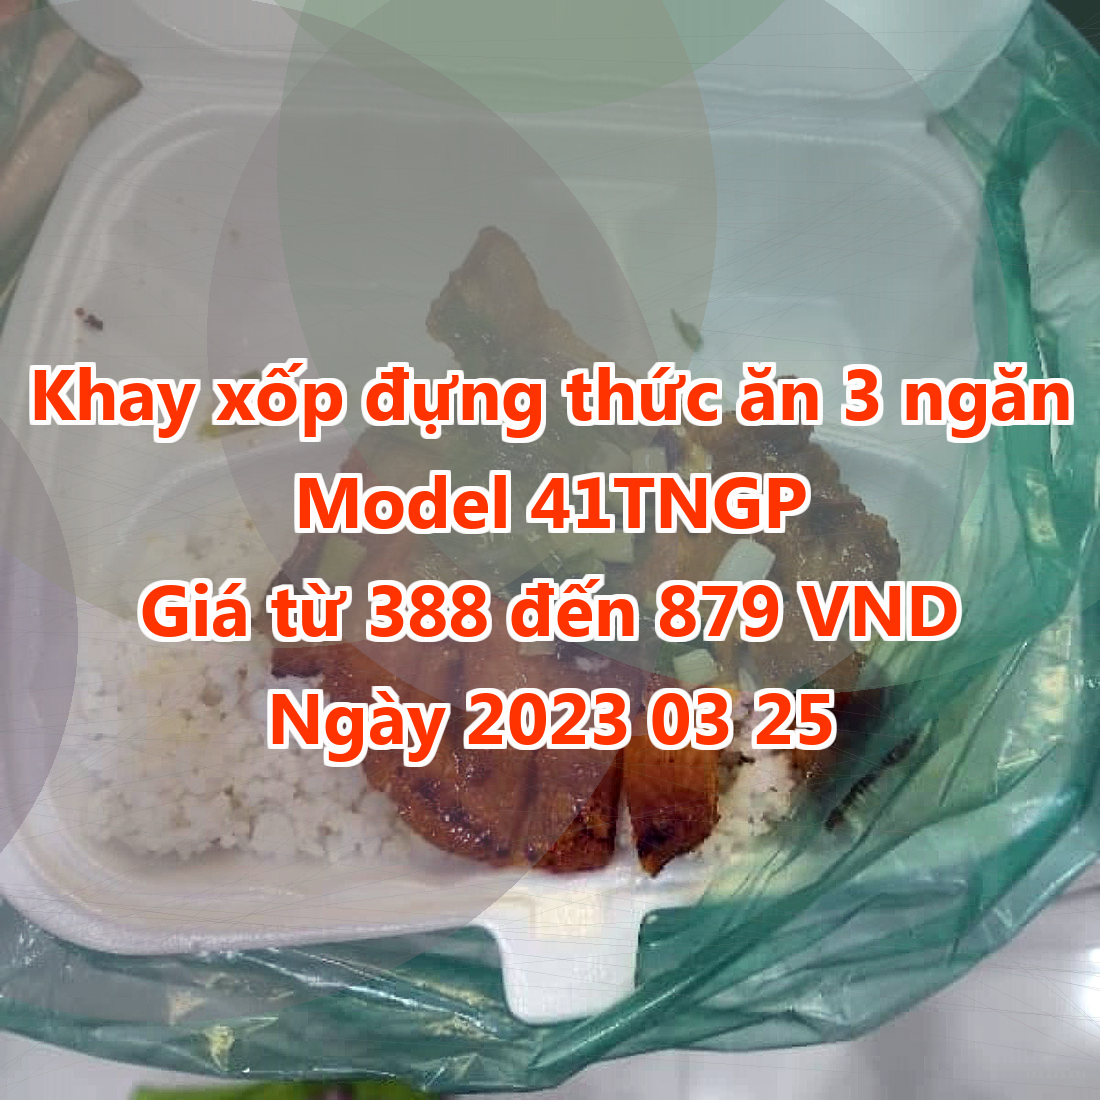 Khay xốp đựng thức ăn 3 ngăn - Model 41TNGP